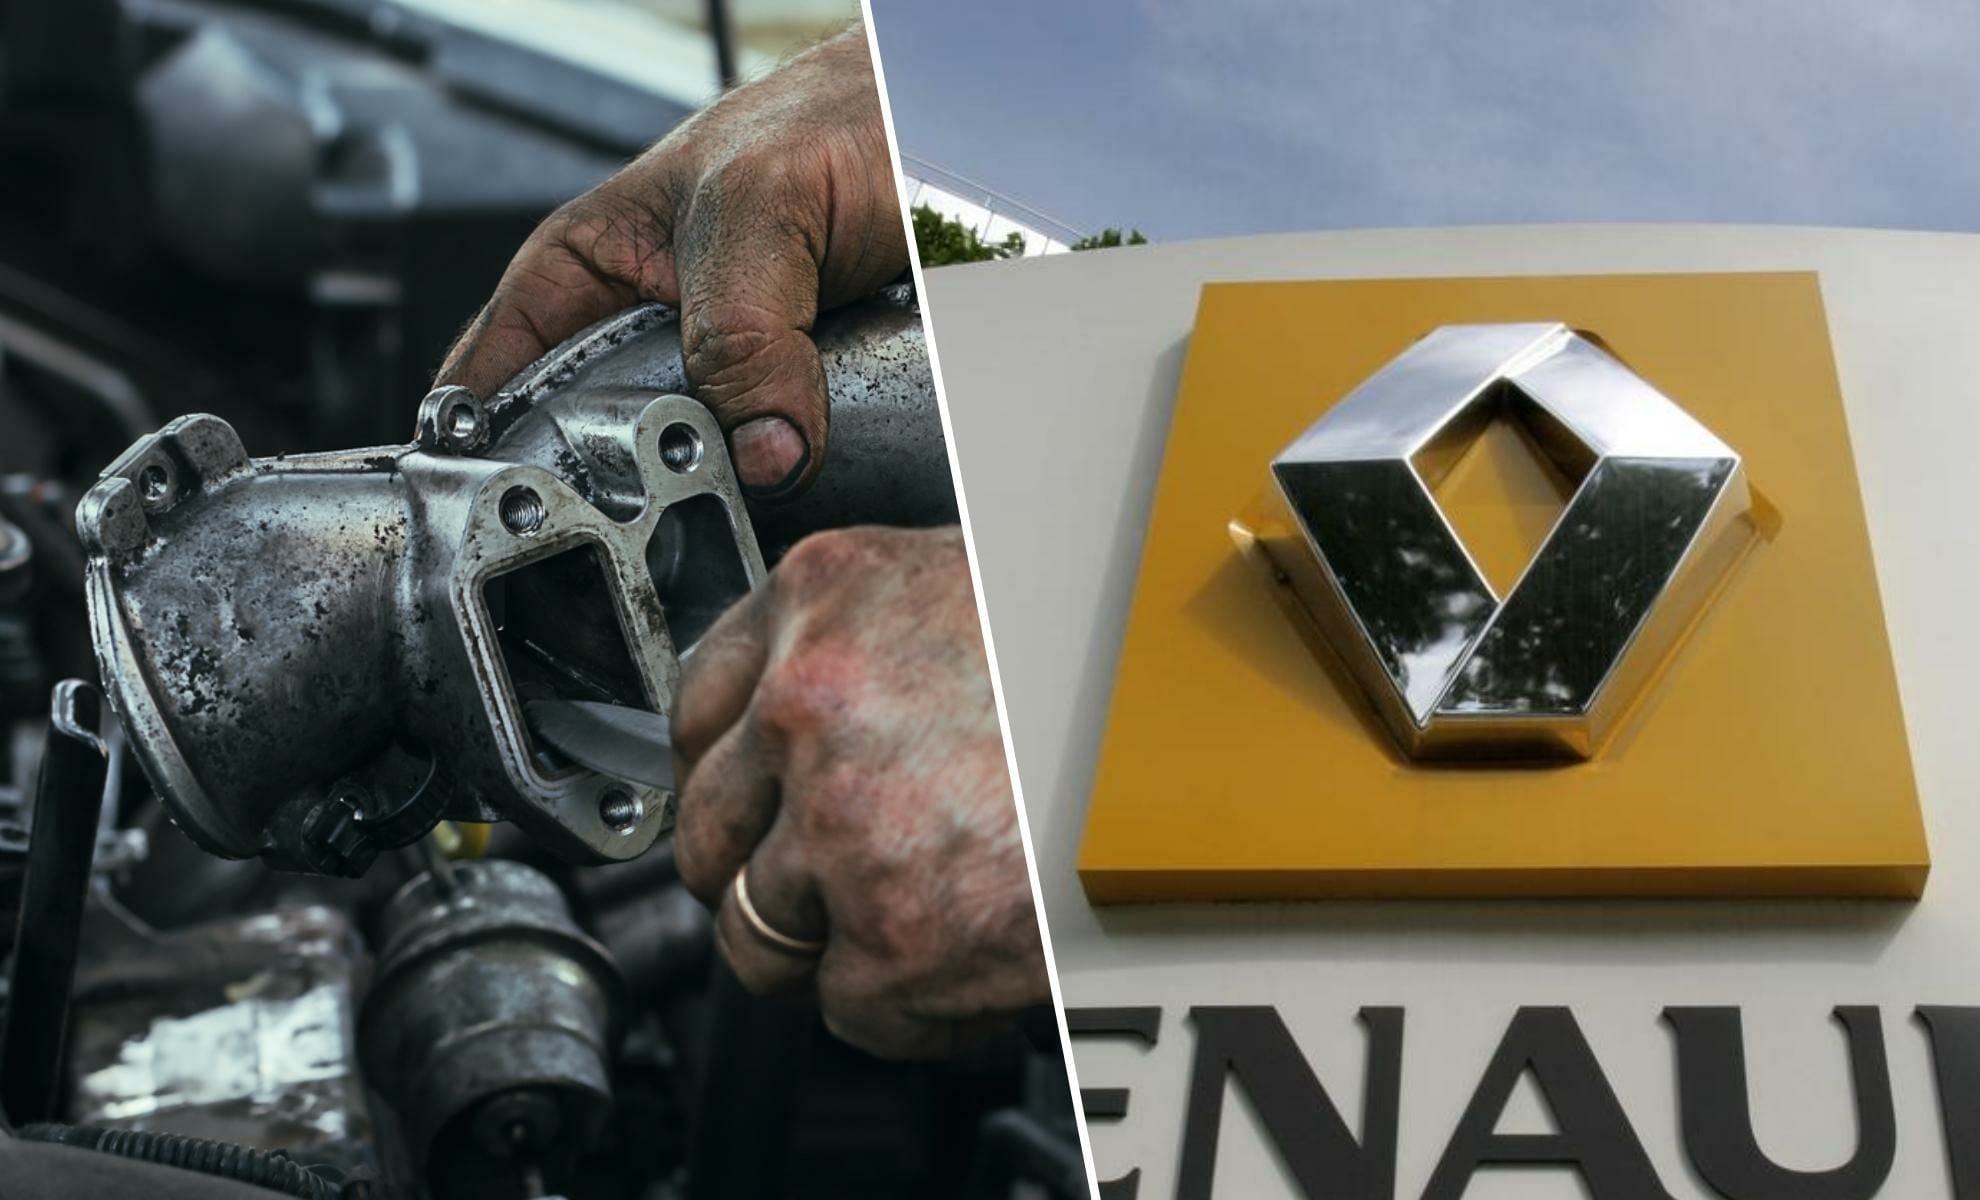 Scandalo alla Renault: migliaia di clienti scontenti indicano motori difettosi – Econostrum.info